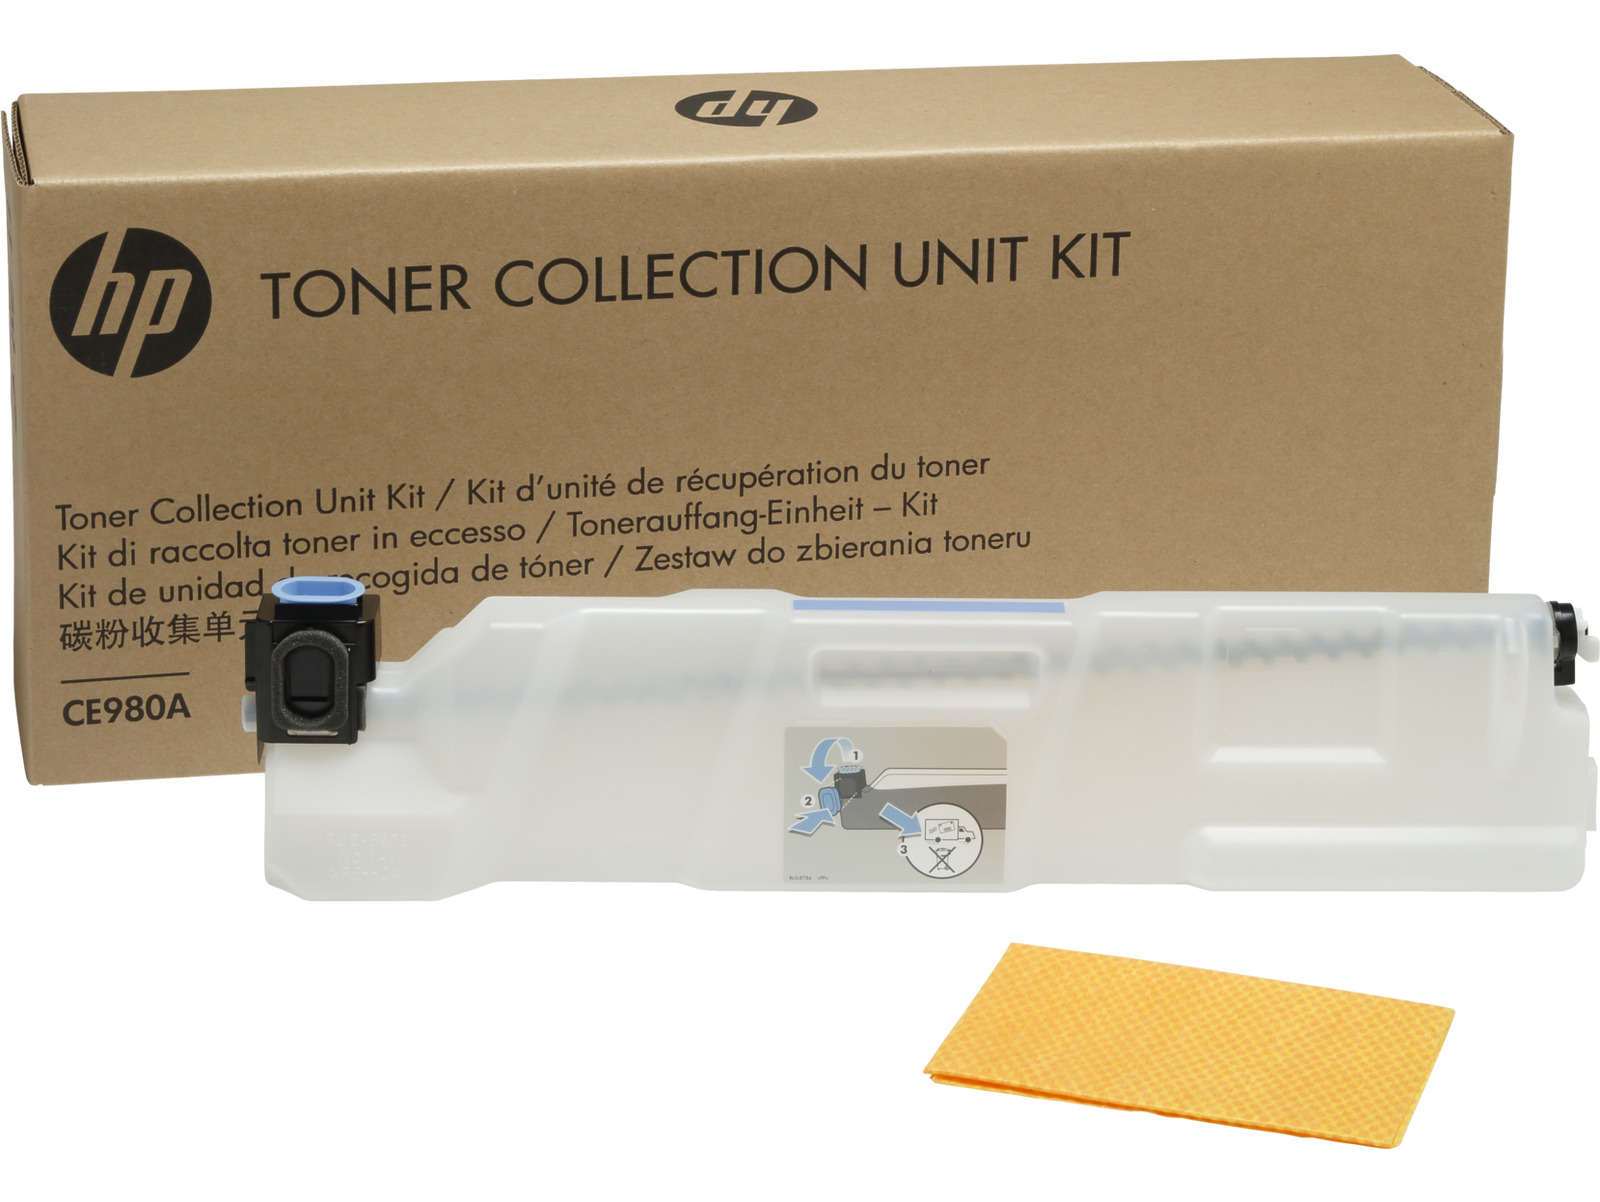 HP Color LaserJet CE980A Toner Collection Unit, Up to 150,000 pages, CE980A